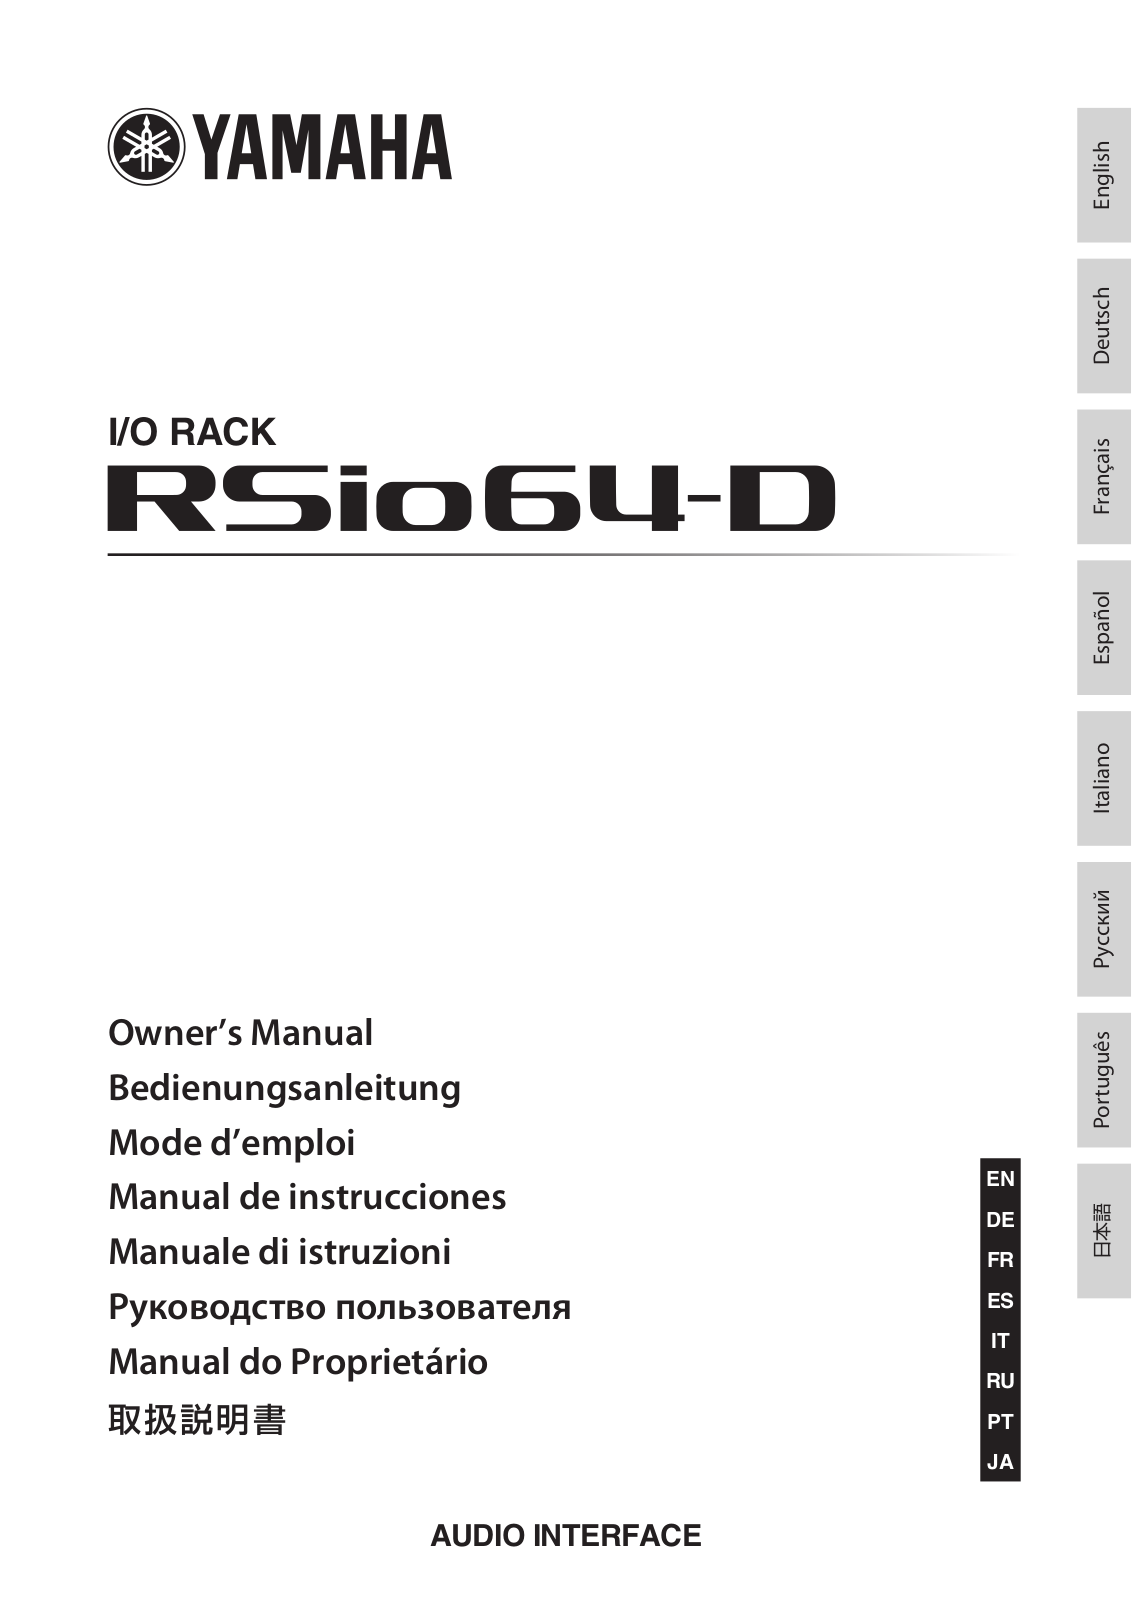 Yamaha RSIO64-D User Manual